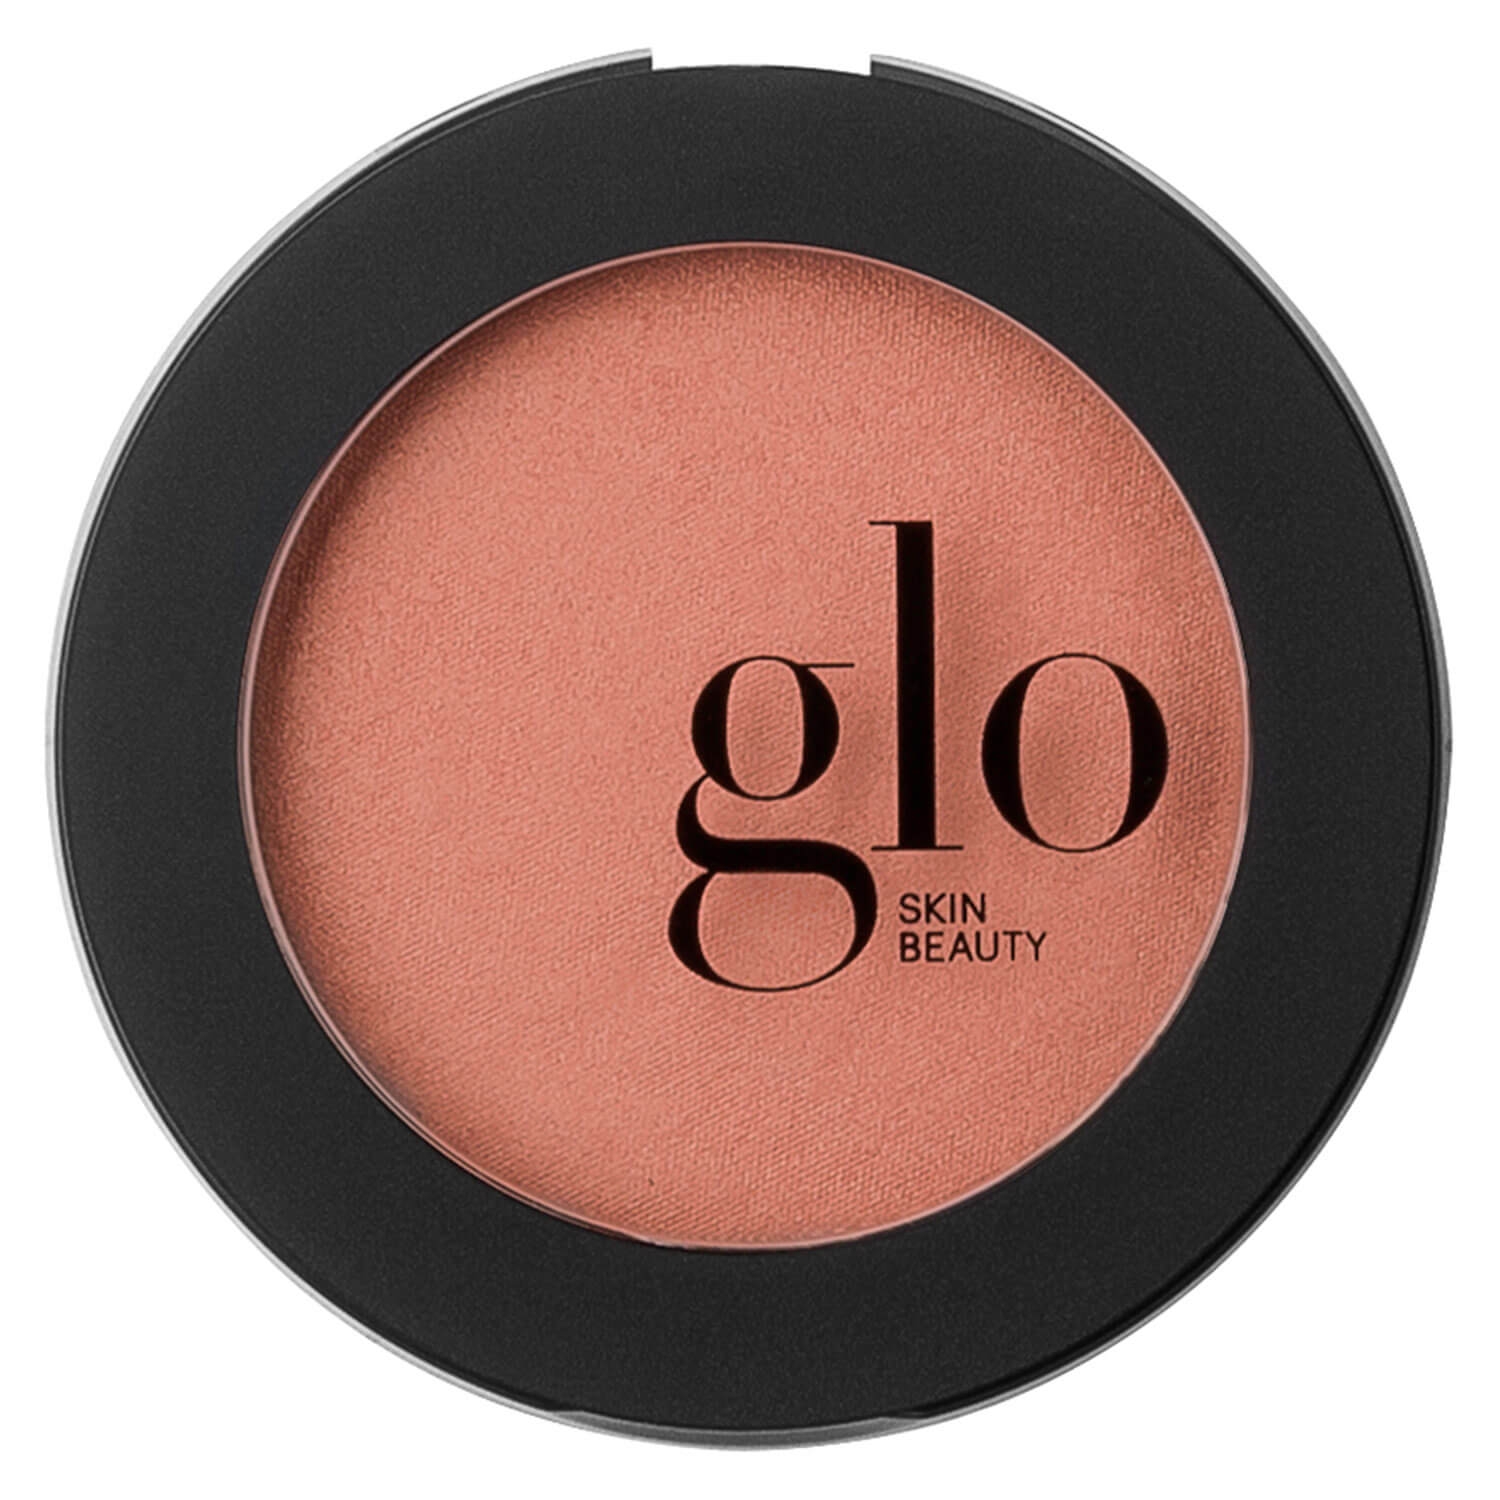 Produktbild von Glo Skin Beauty Blush - Blush Soleil